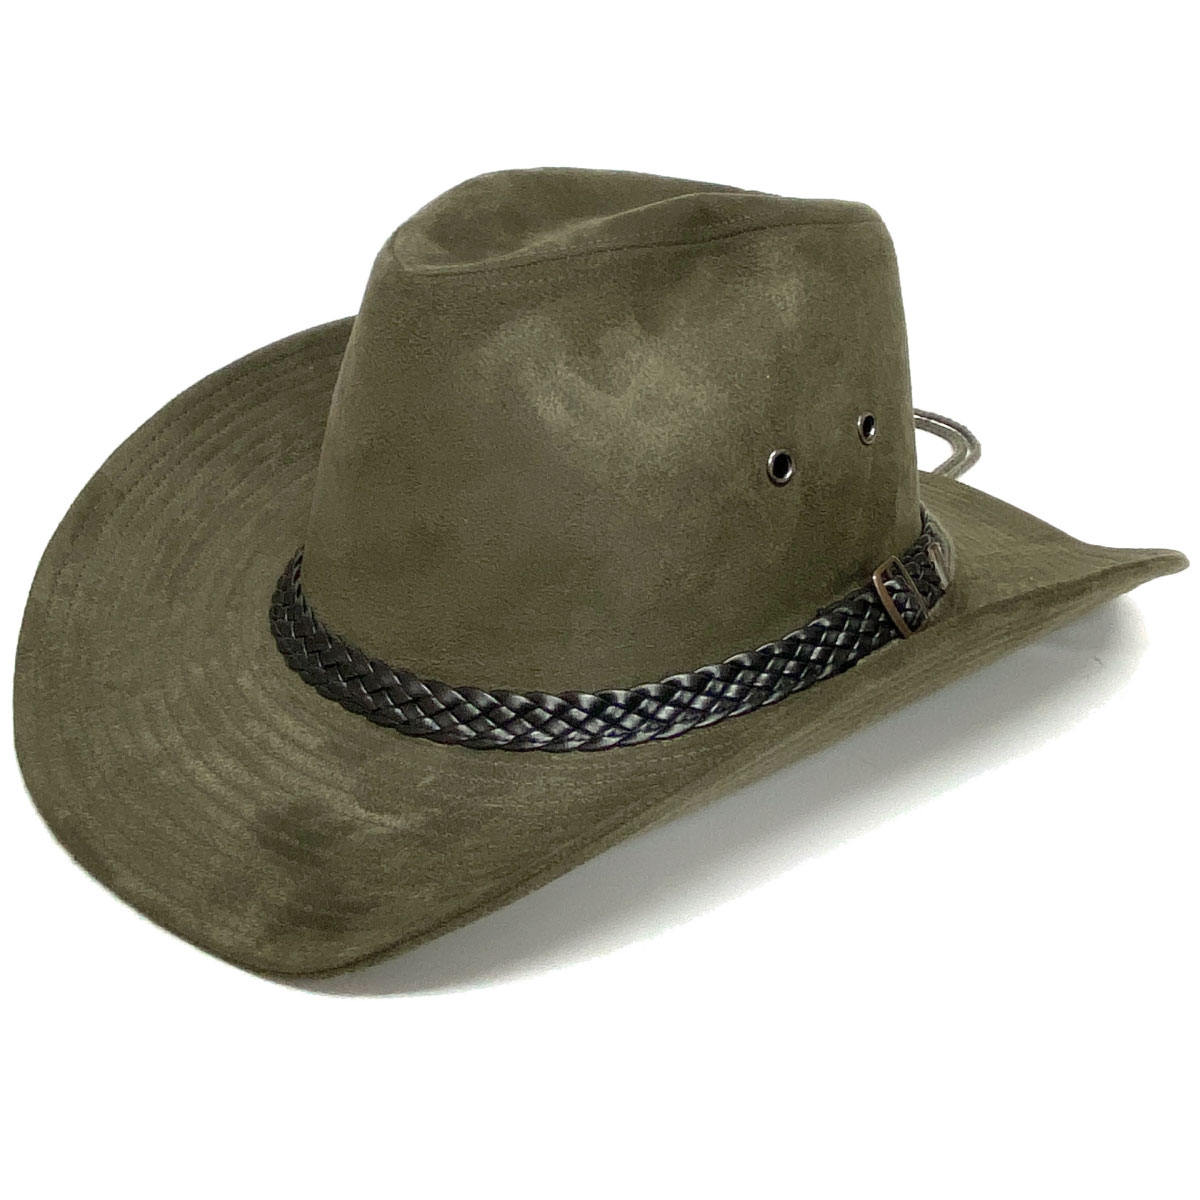 カウボーイハット メンズ 帽子 秋冬 ウエスタンハット スエード調 太め編みベルト hat-938 ワイルド 格好いい